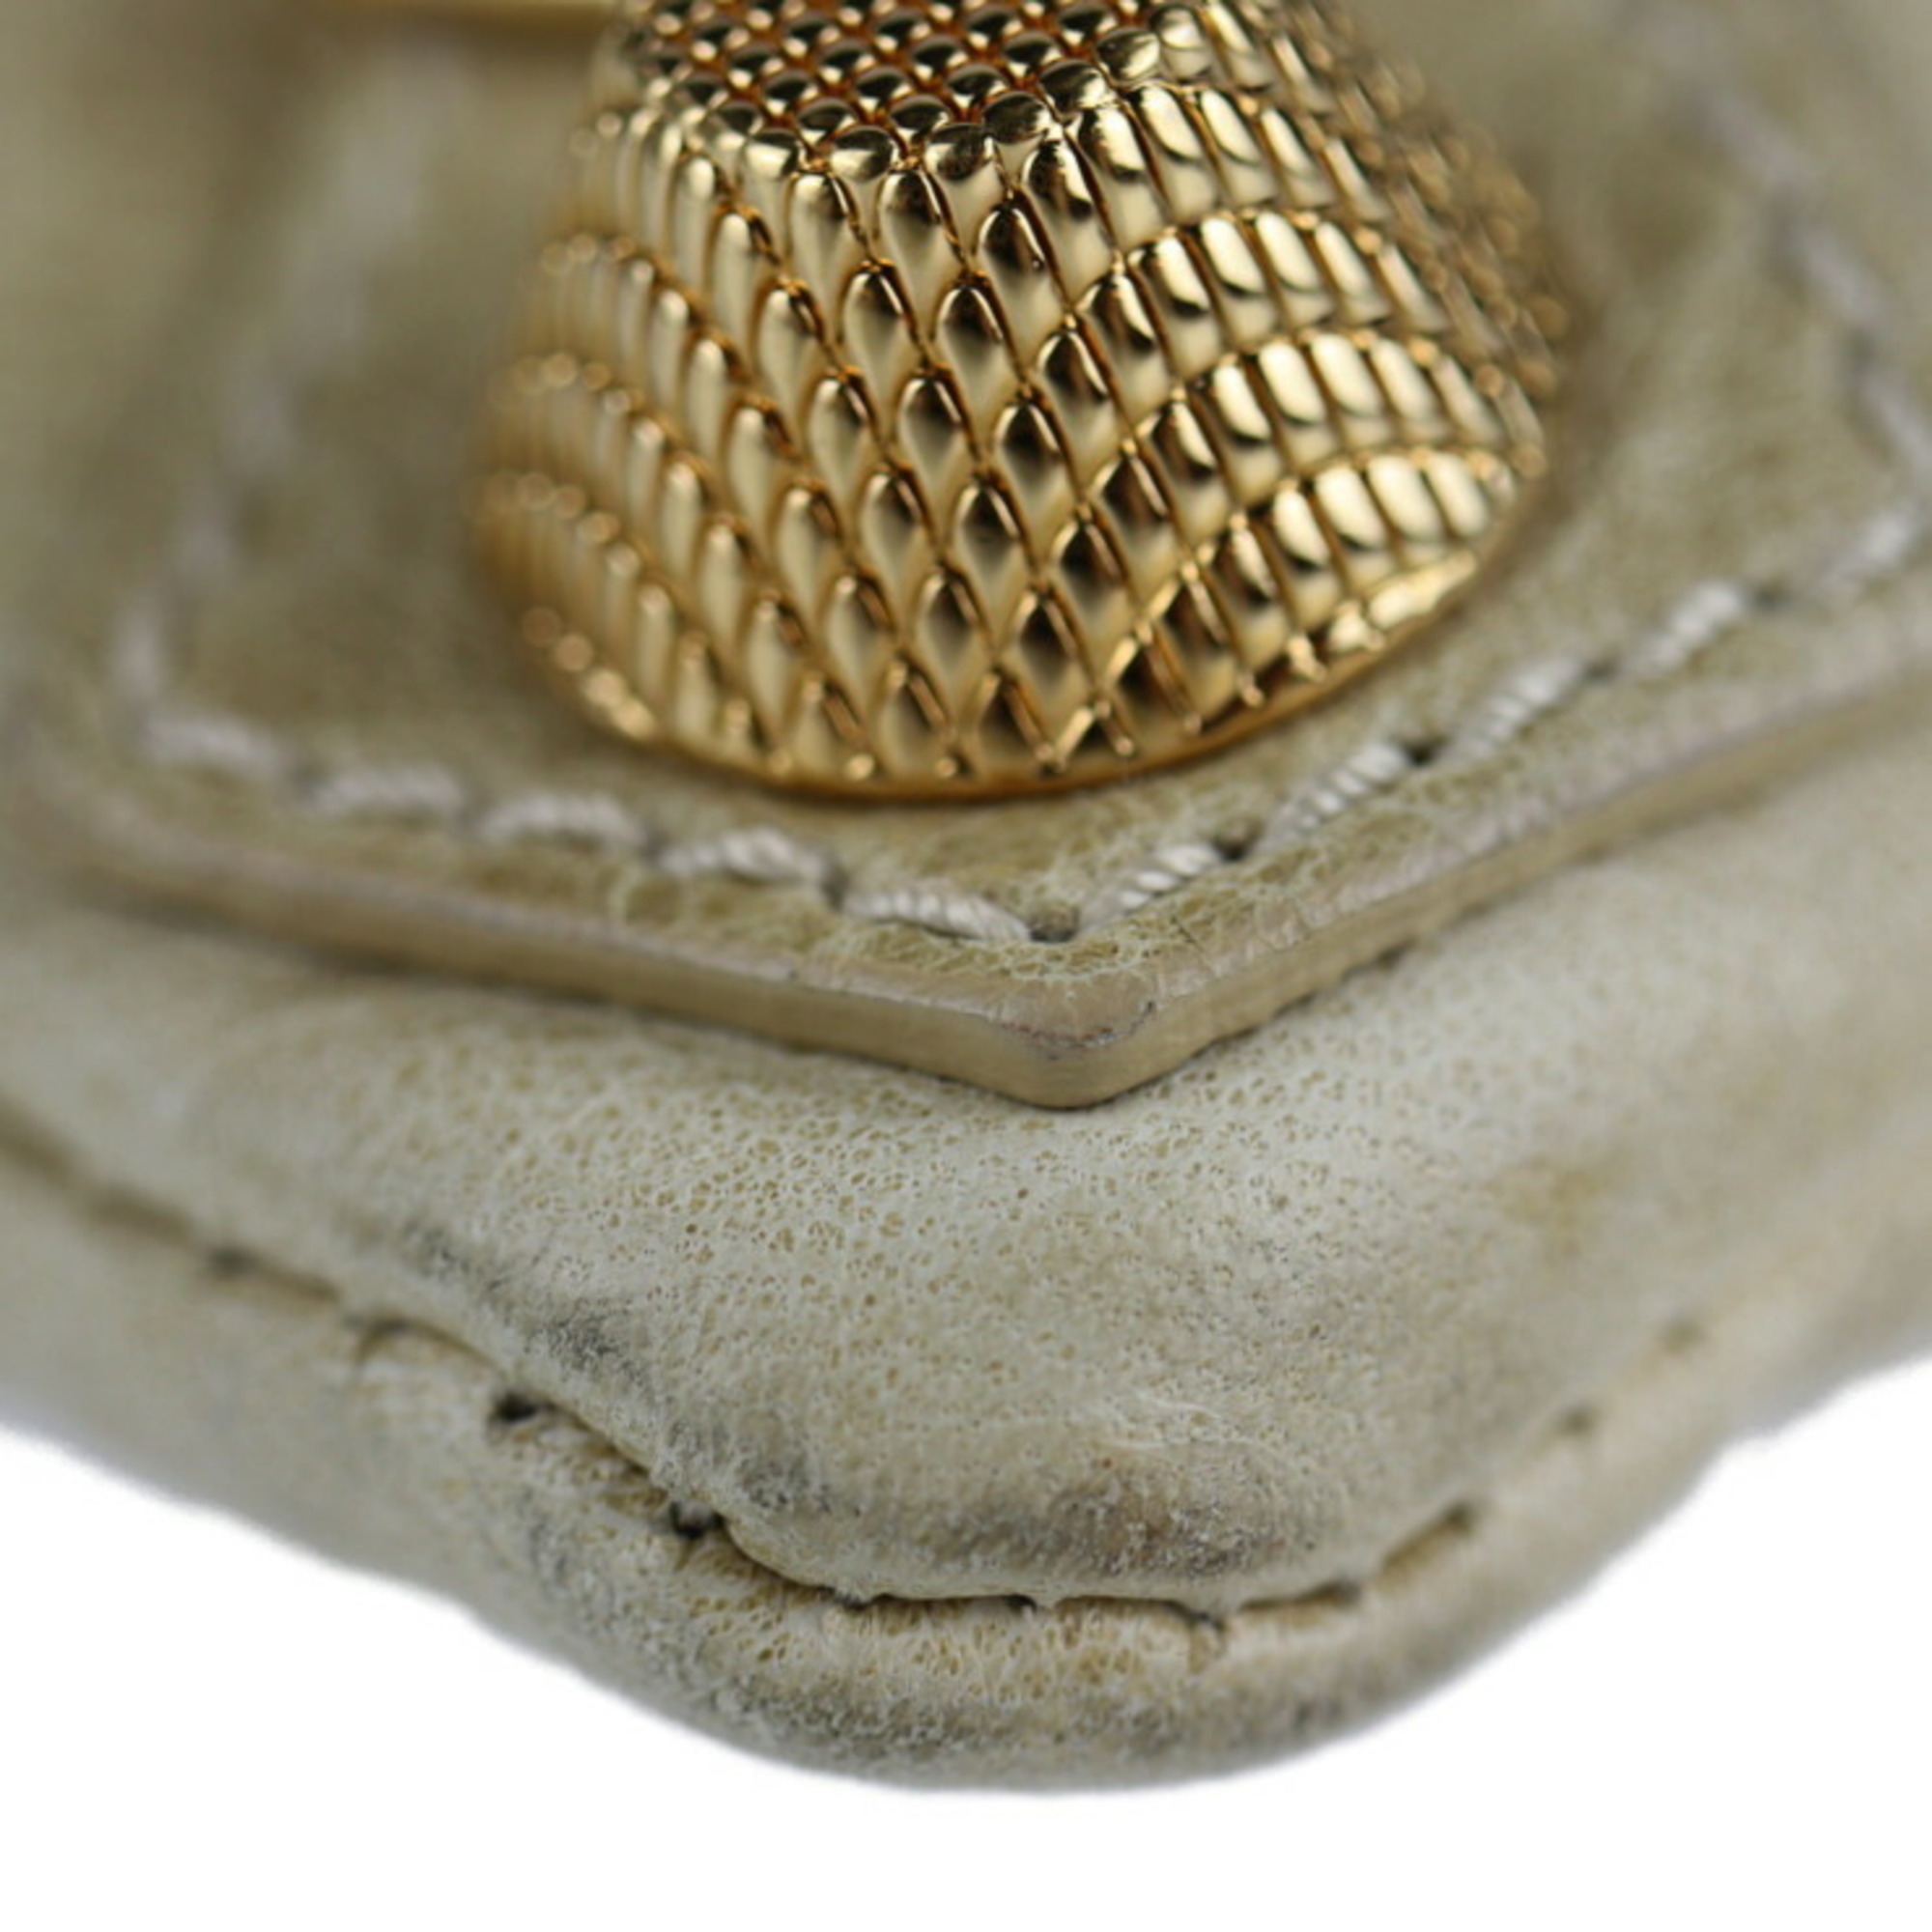 BALENCIAGA Balenciaga Giant Envelope Clutch Bag 186182 Leather Beige Gold Hardware